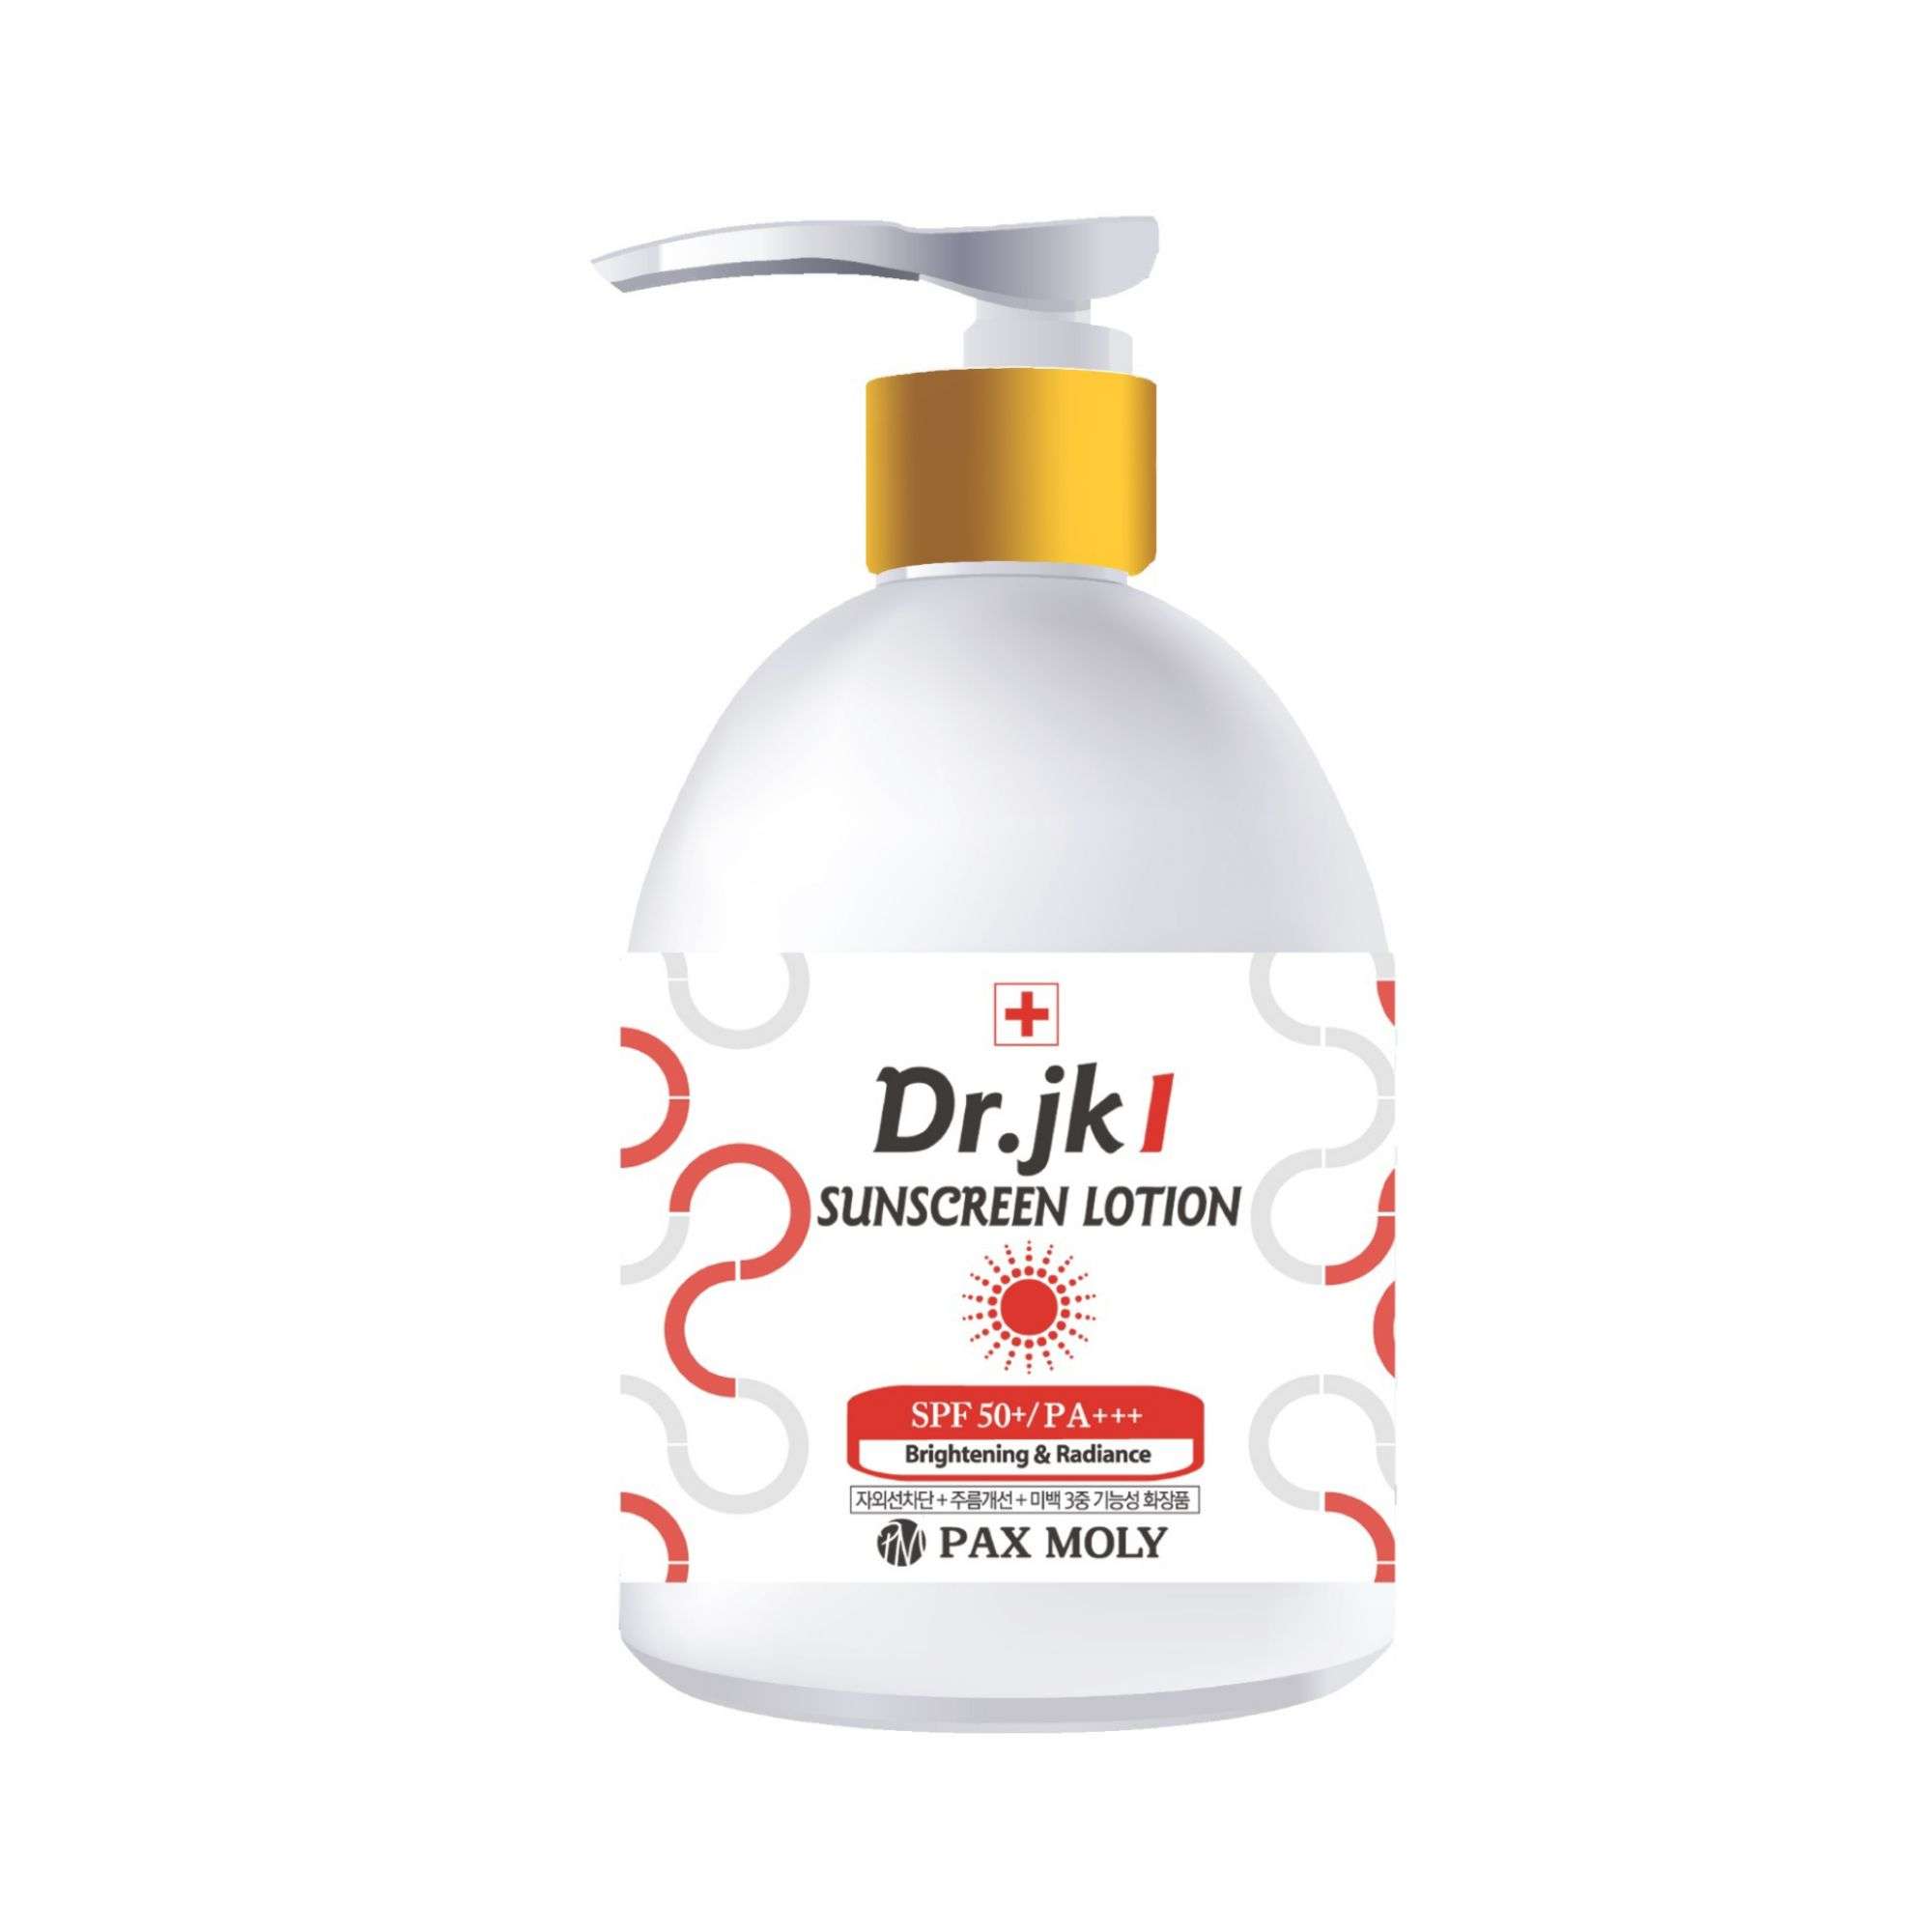 Dr.jk 4 Vita-C Collagen Sunscreen Cream SPF 50+ PA+++ UVA/UVB, 200ml